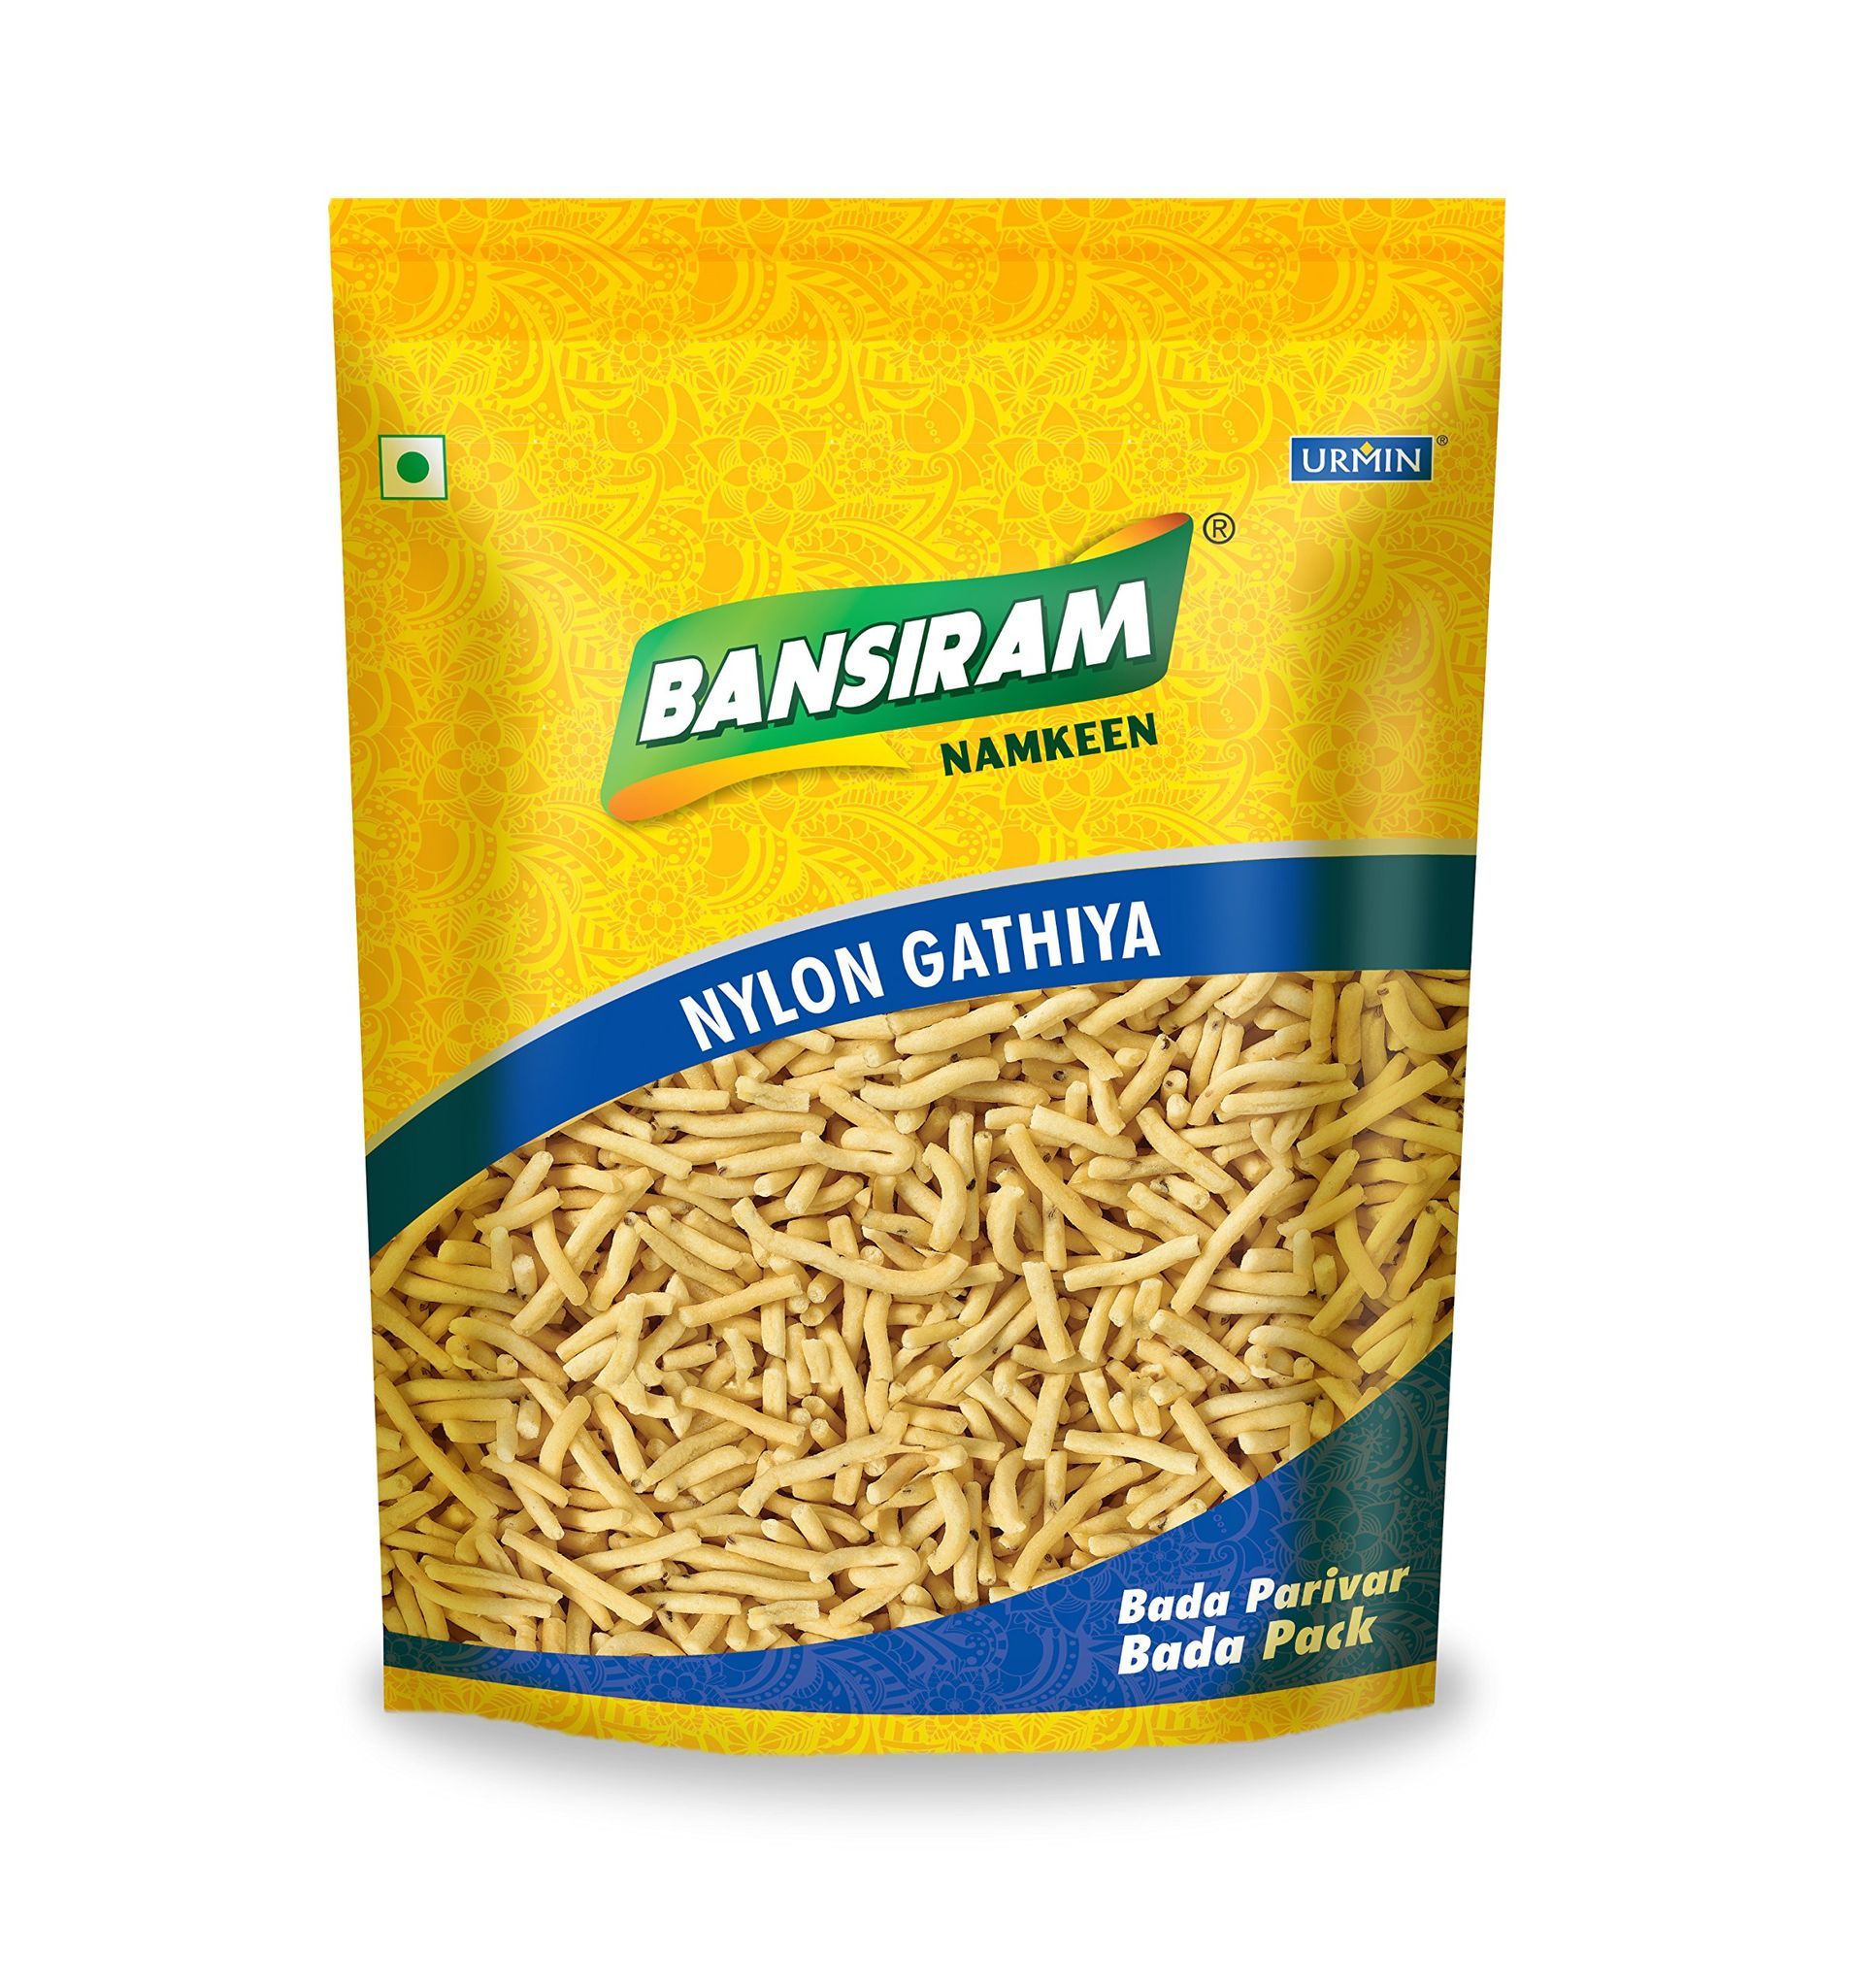 BANSI RAM Namkeen Nylon Gathiya, 400 g